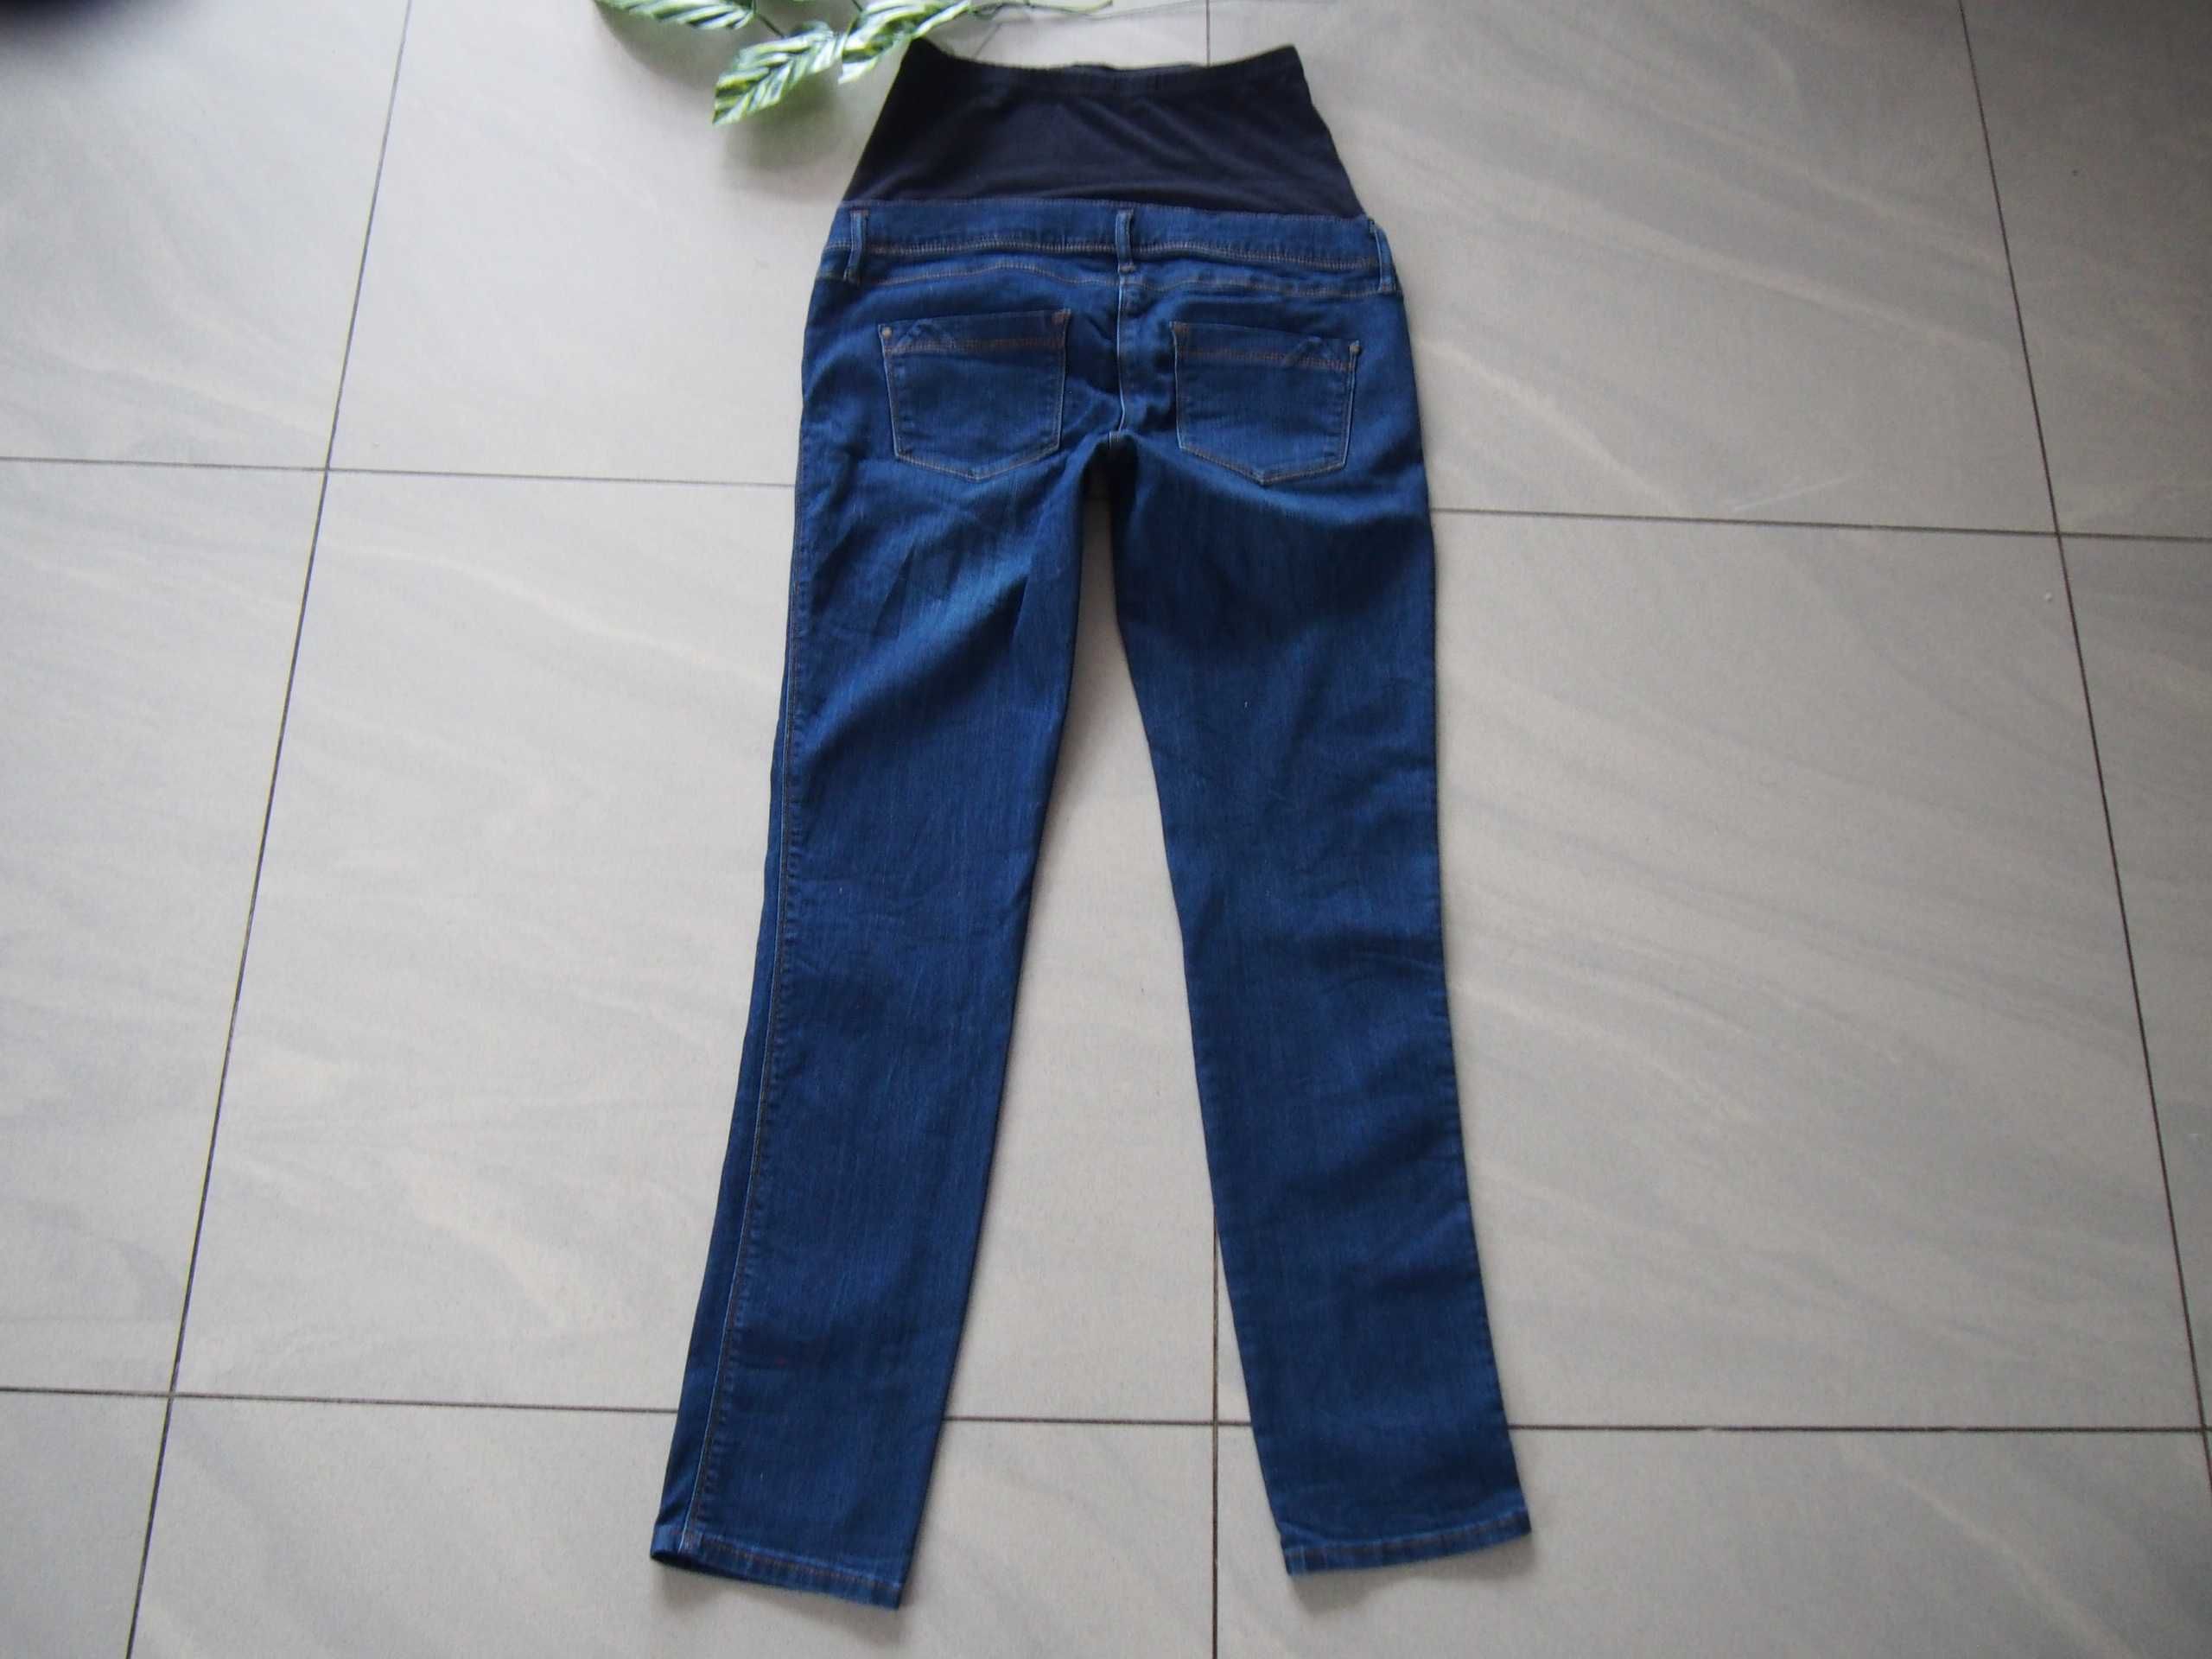 Spodnie ciążowe XS/S C&A jeansy bawełna